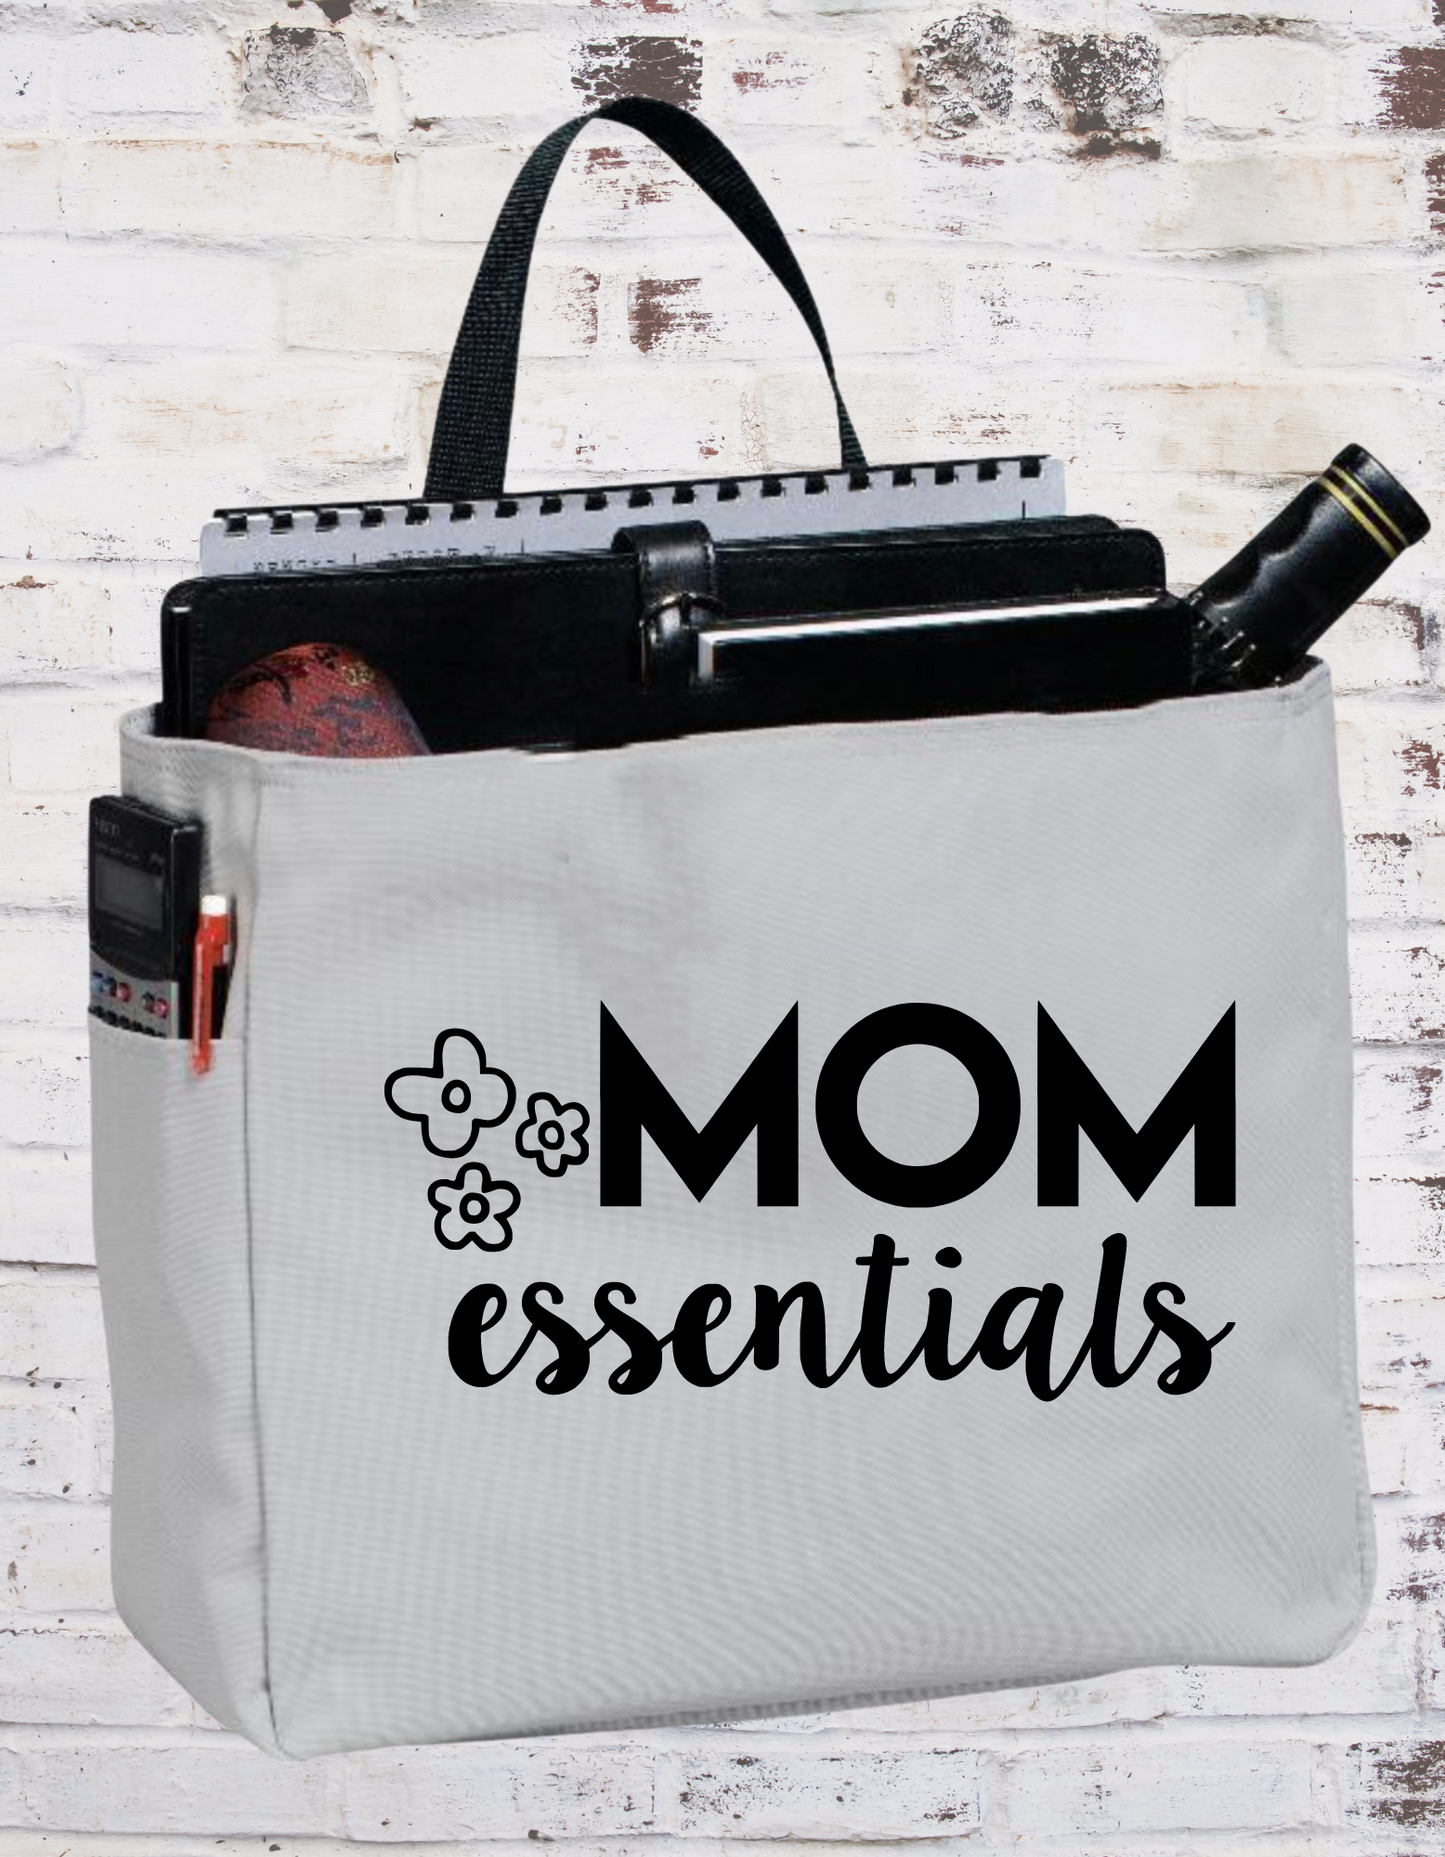 Mom Essentials Tote Bag